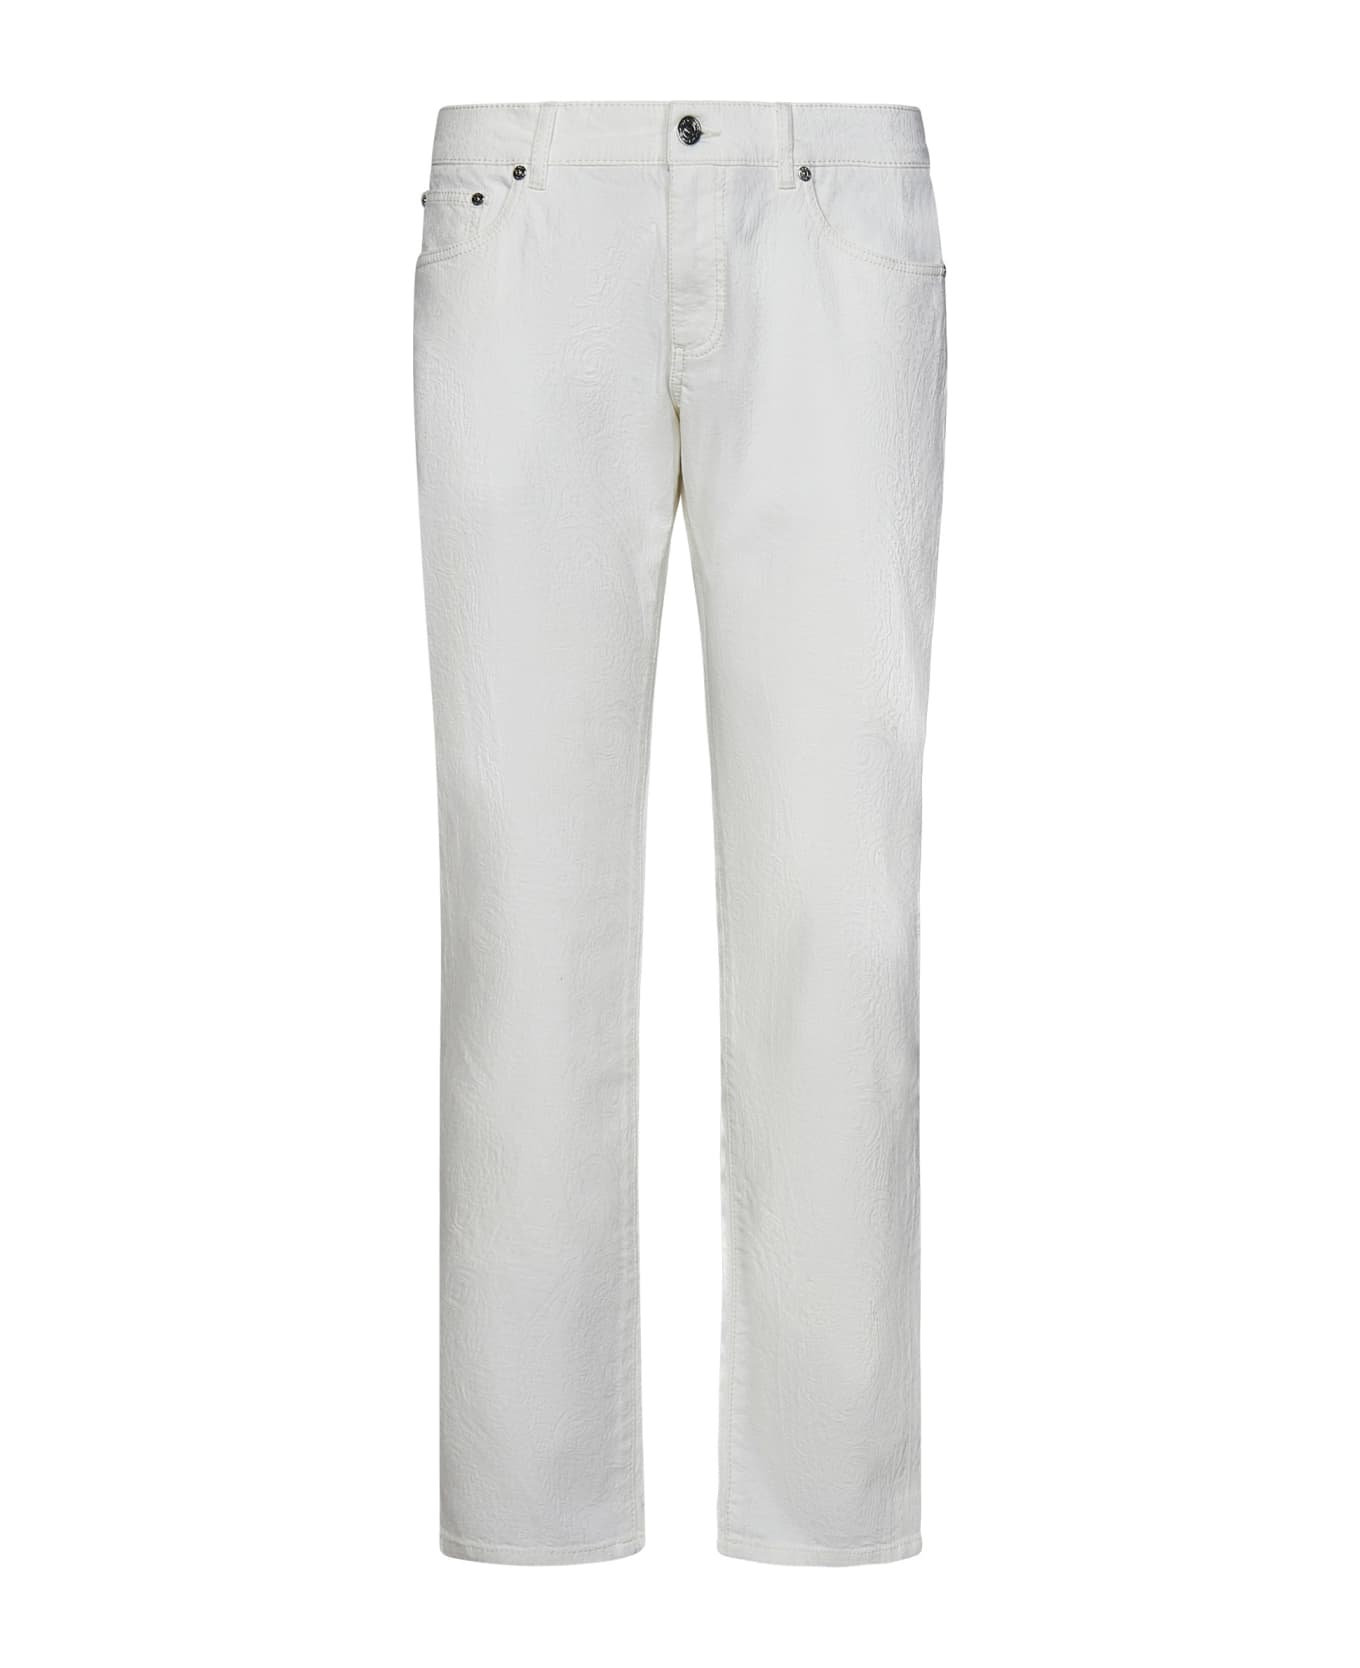 Etro Jeans - White